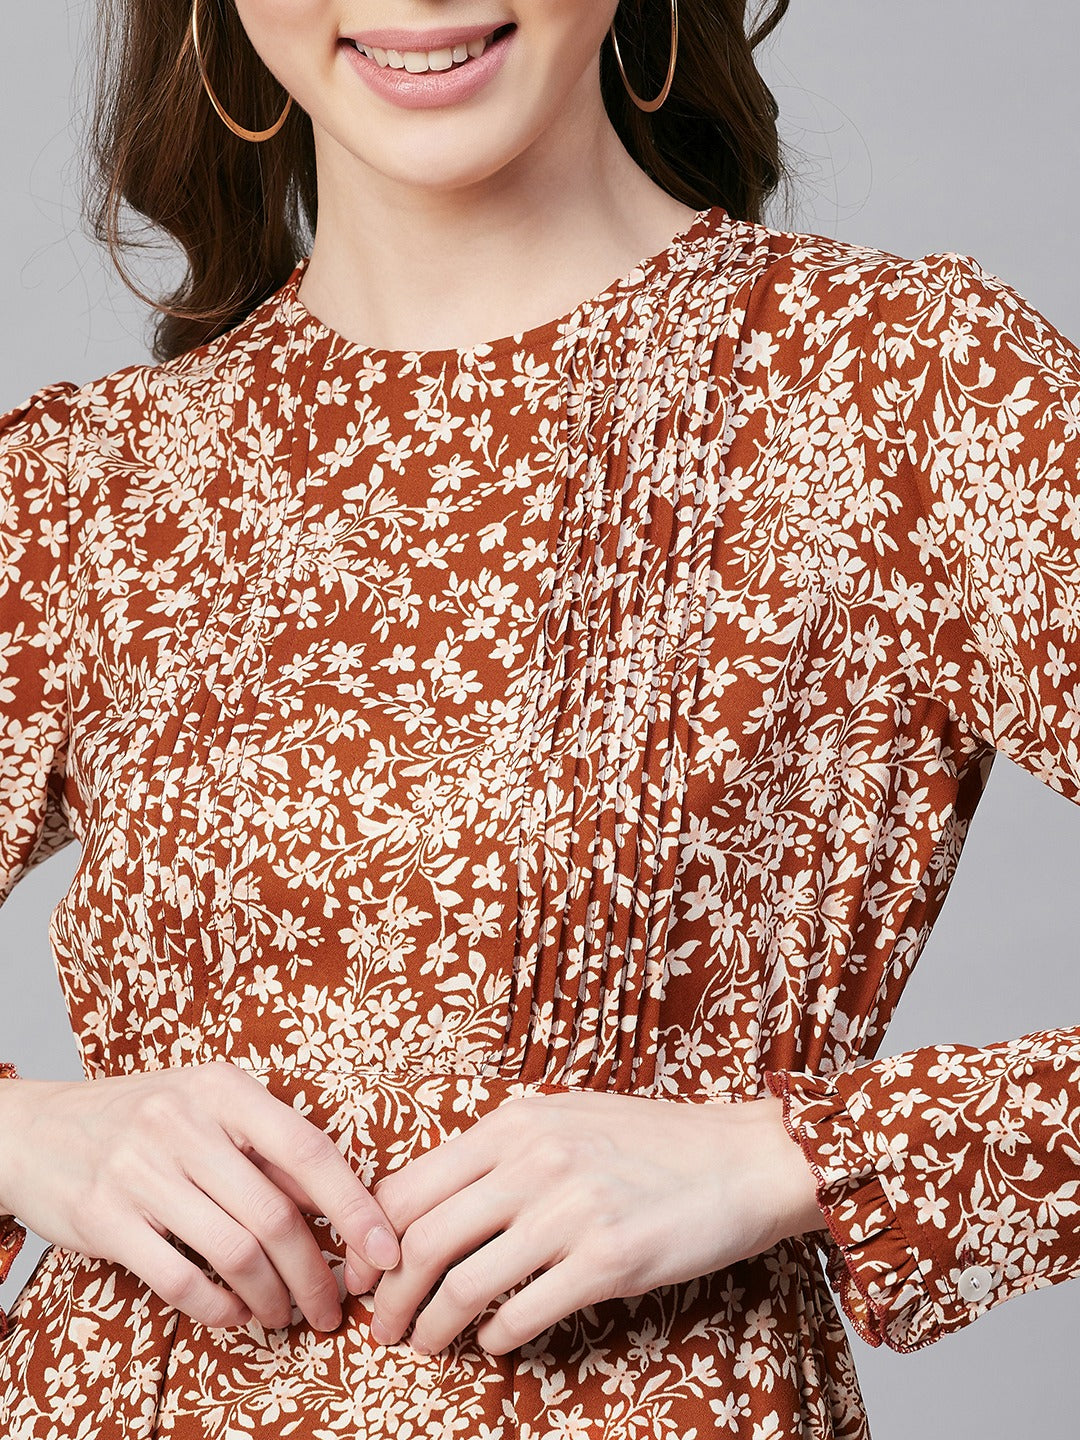 Women's Rust Polyester Pintuck Dress